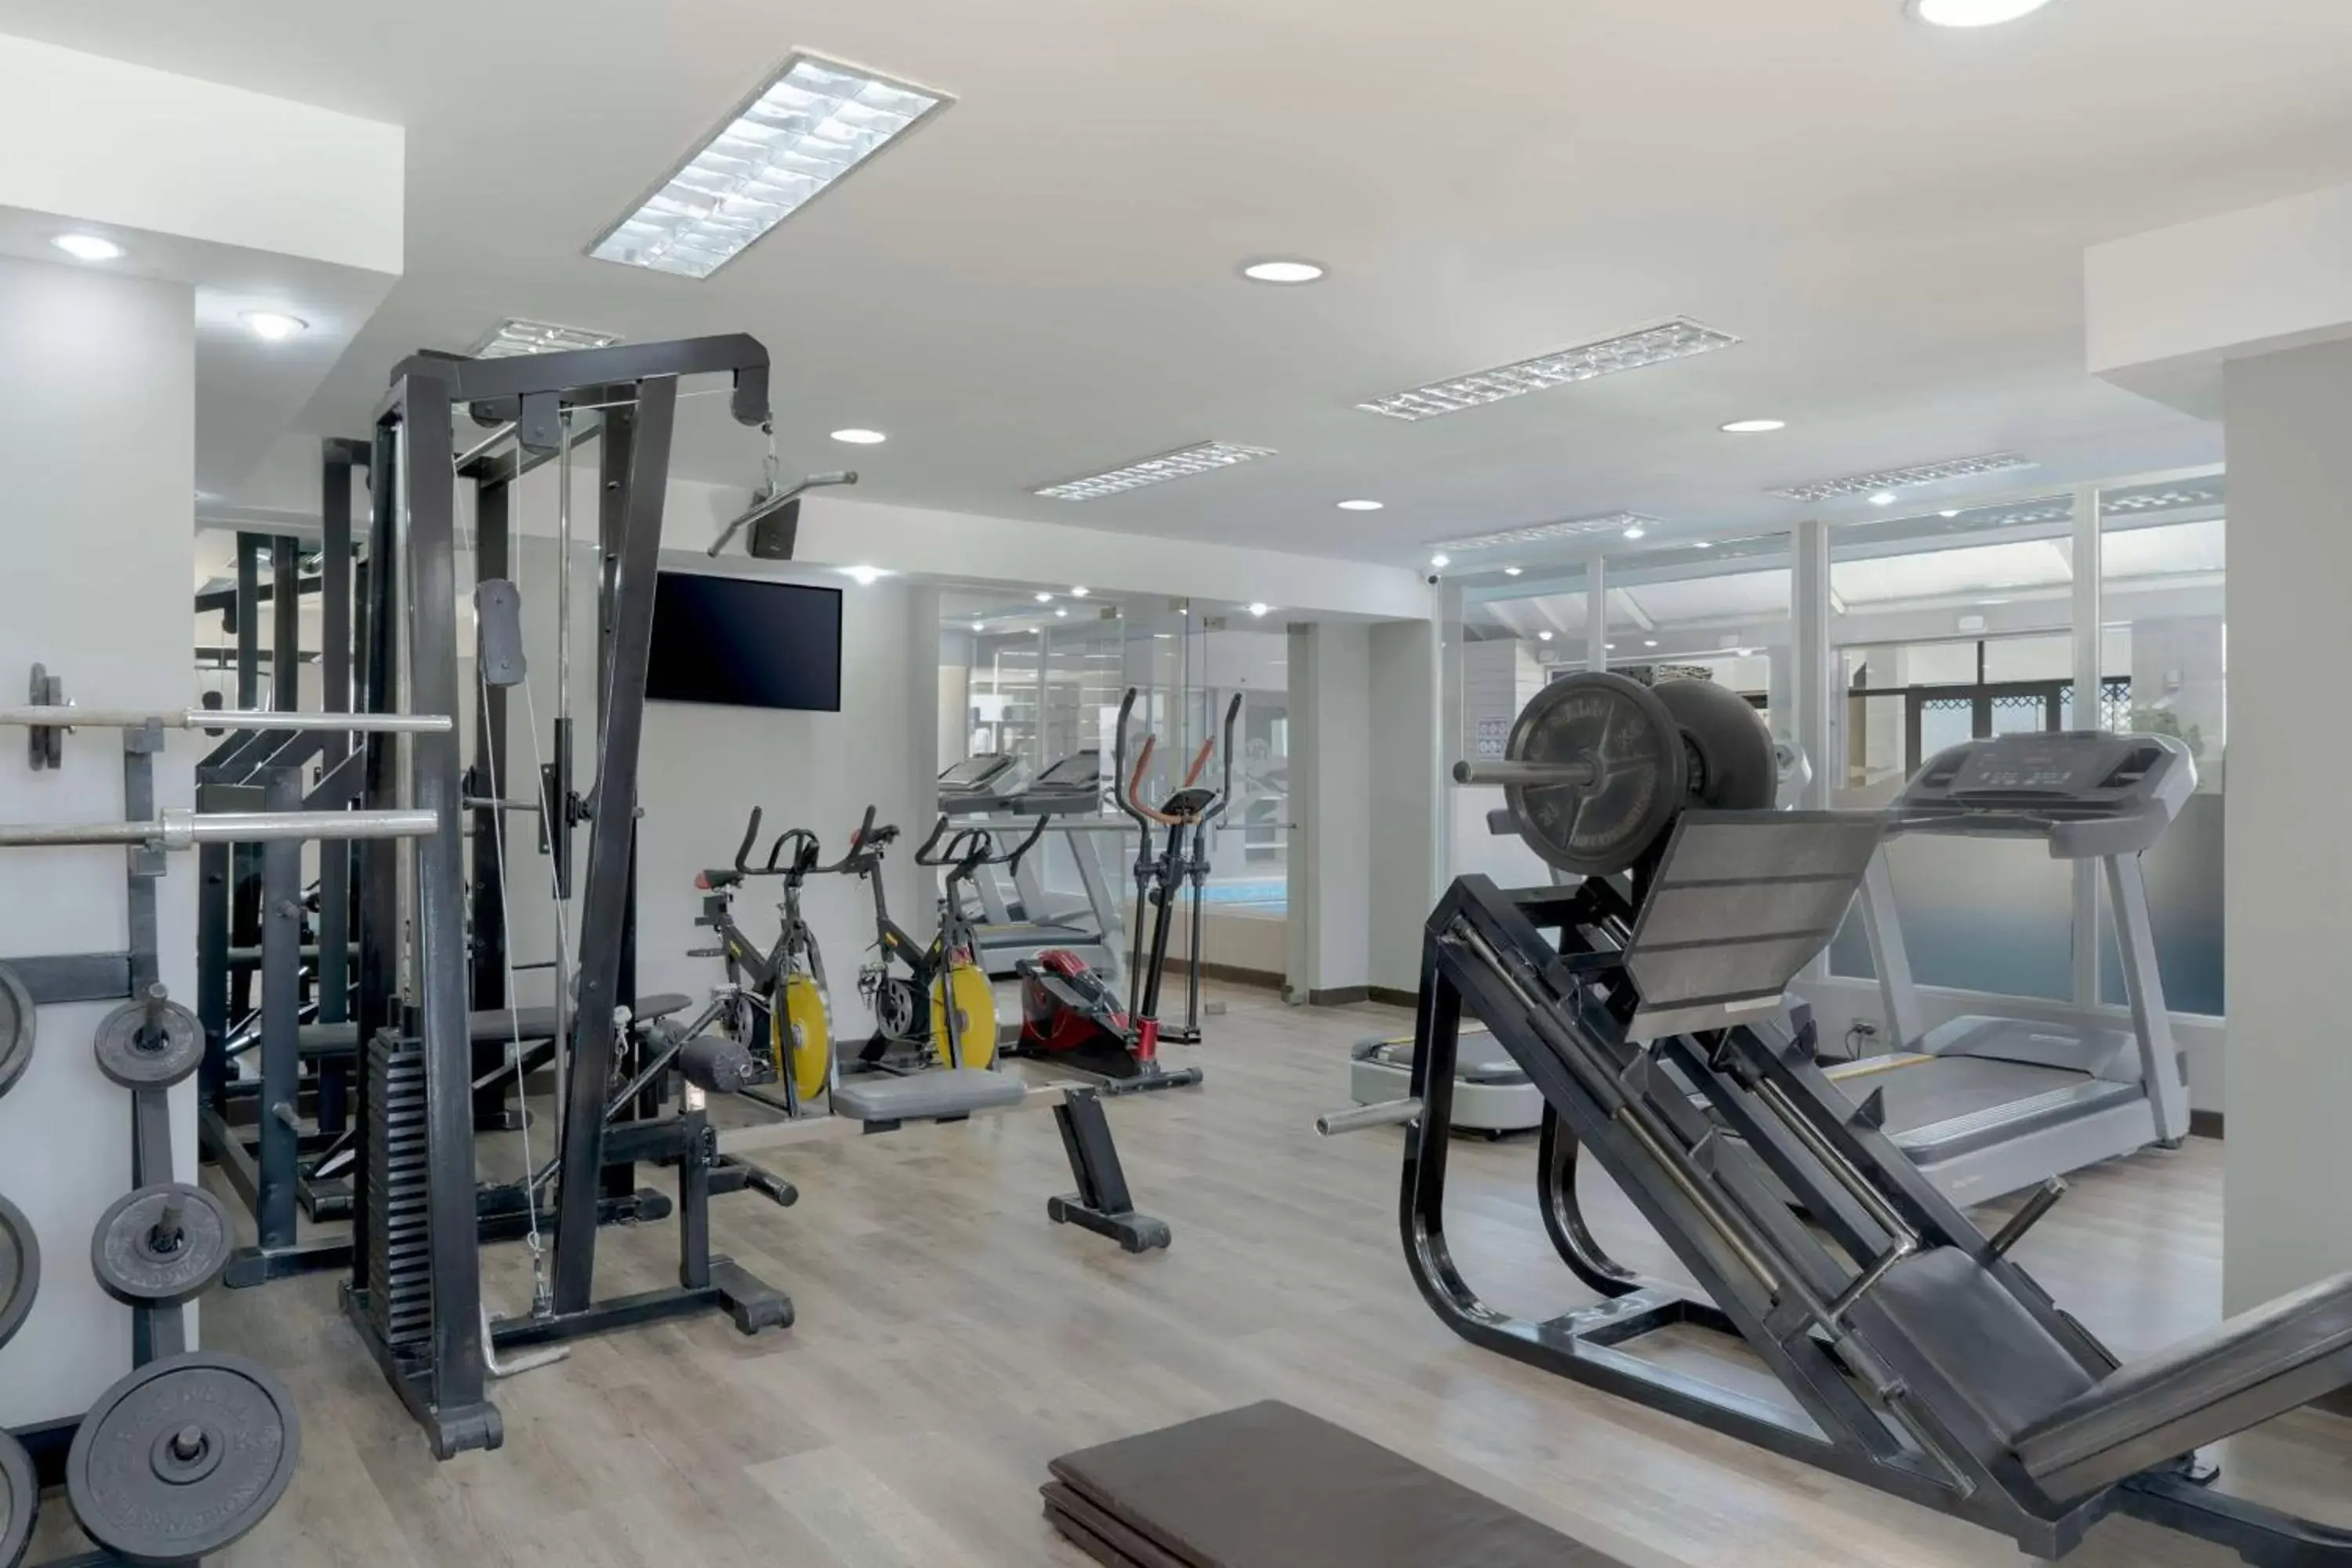 Fitness centre/facilities, Fitness Center/Facilities in NH Santiago del Estero